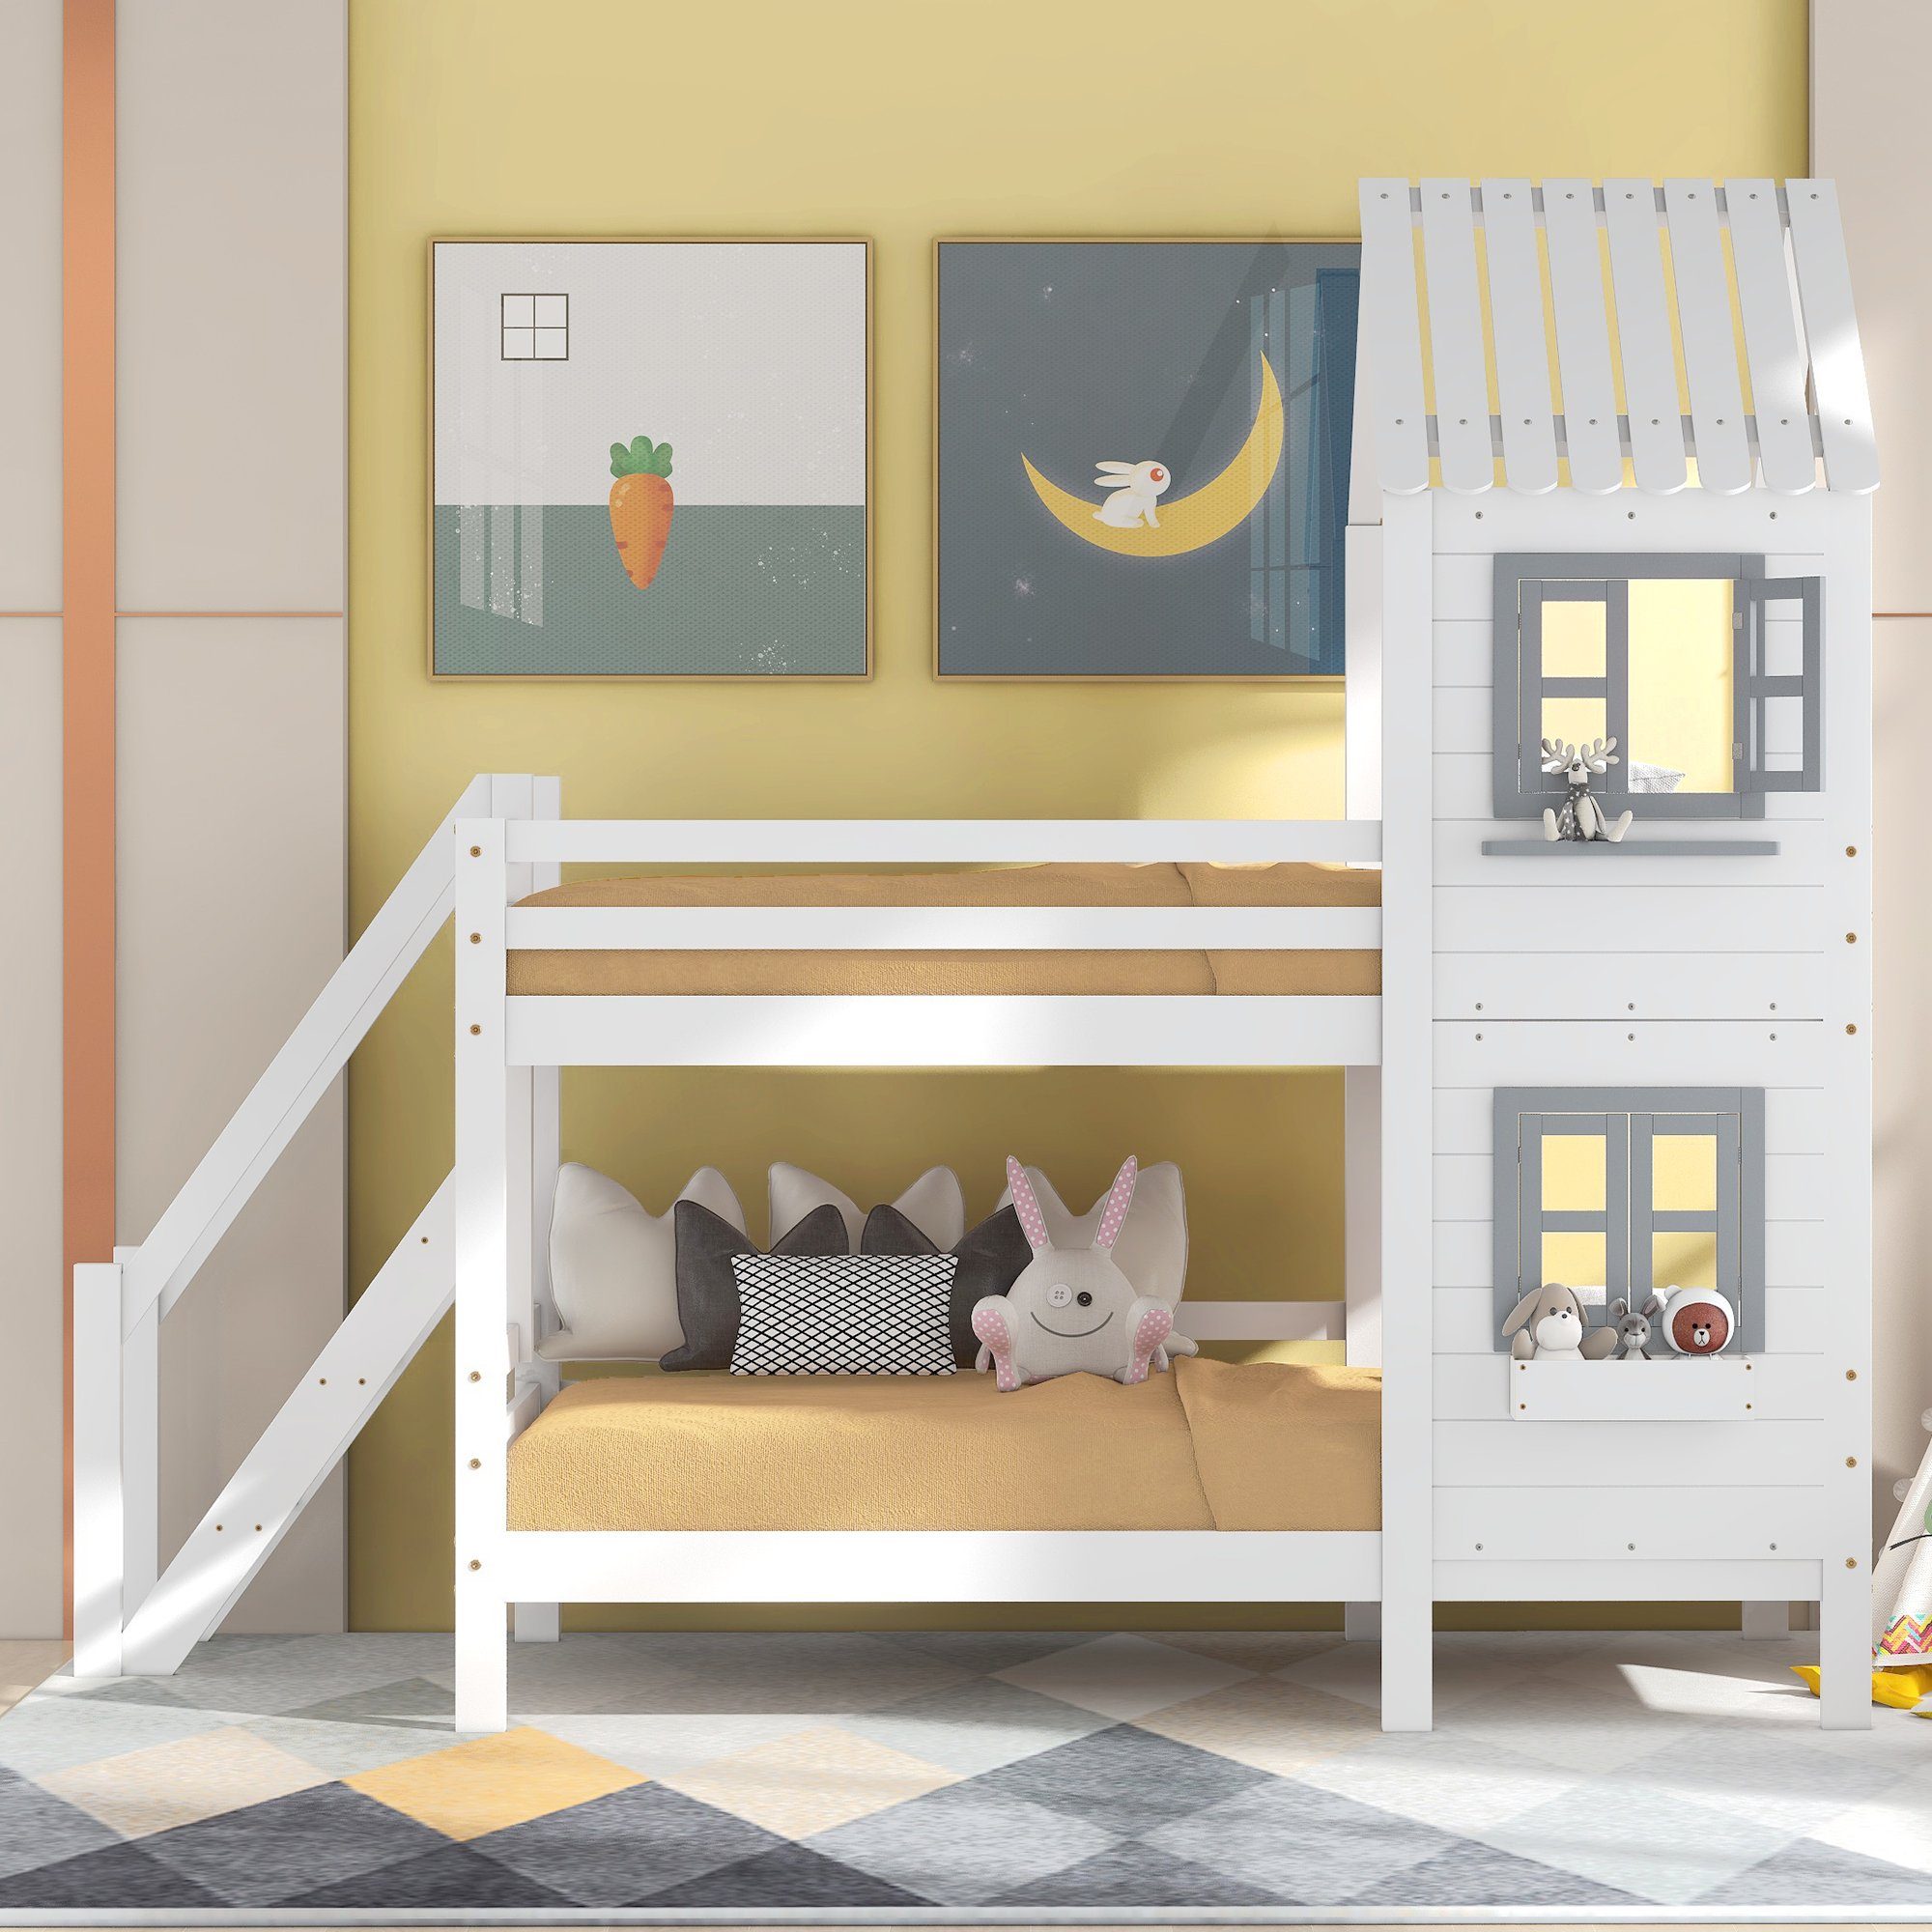 SOFTWEARY Etagenbett Hochbett mit 2 Schlafgelegenheiten, inkl. Rollrost und Treppe (90x200 cm), Holzbett aus Kieferholz, Hausbett inkl. Rausfallschutz, Kinderbett weiß